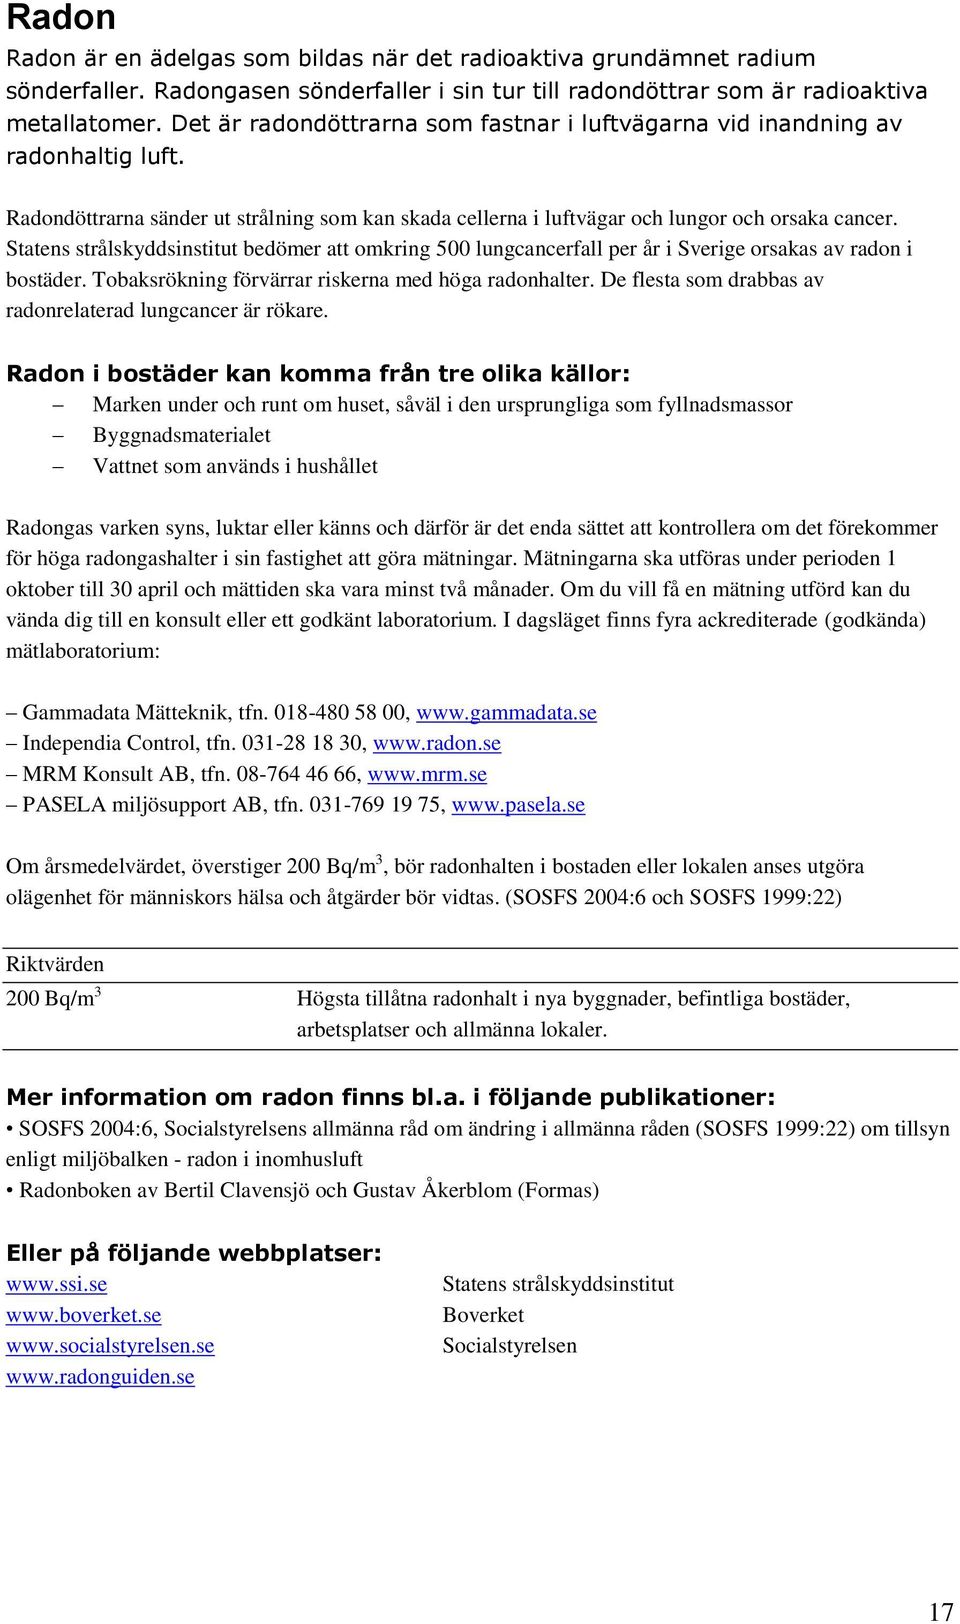 Statens strålskyddsinstitut bedömer att omkring 500 lungcancerfall per år i Sverige orsakas av radon i bostäder. Tobaksrökning förvärrar riskerna med höga radonhalter.